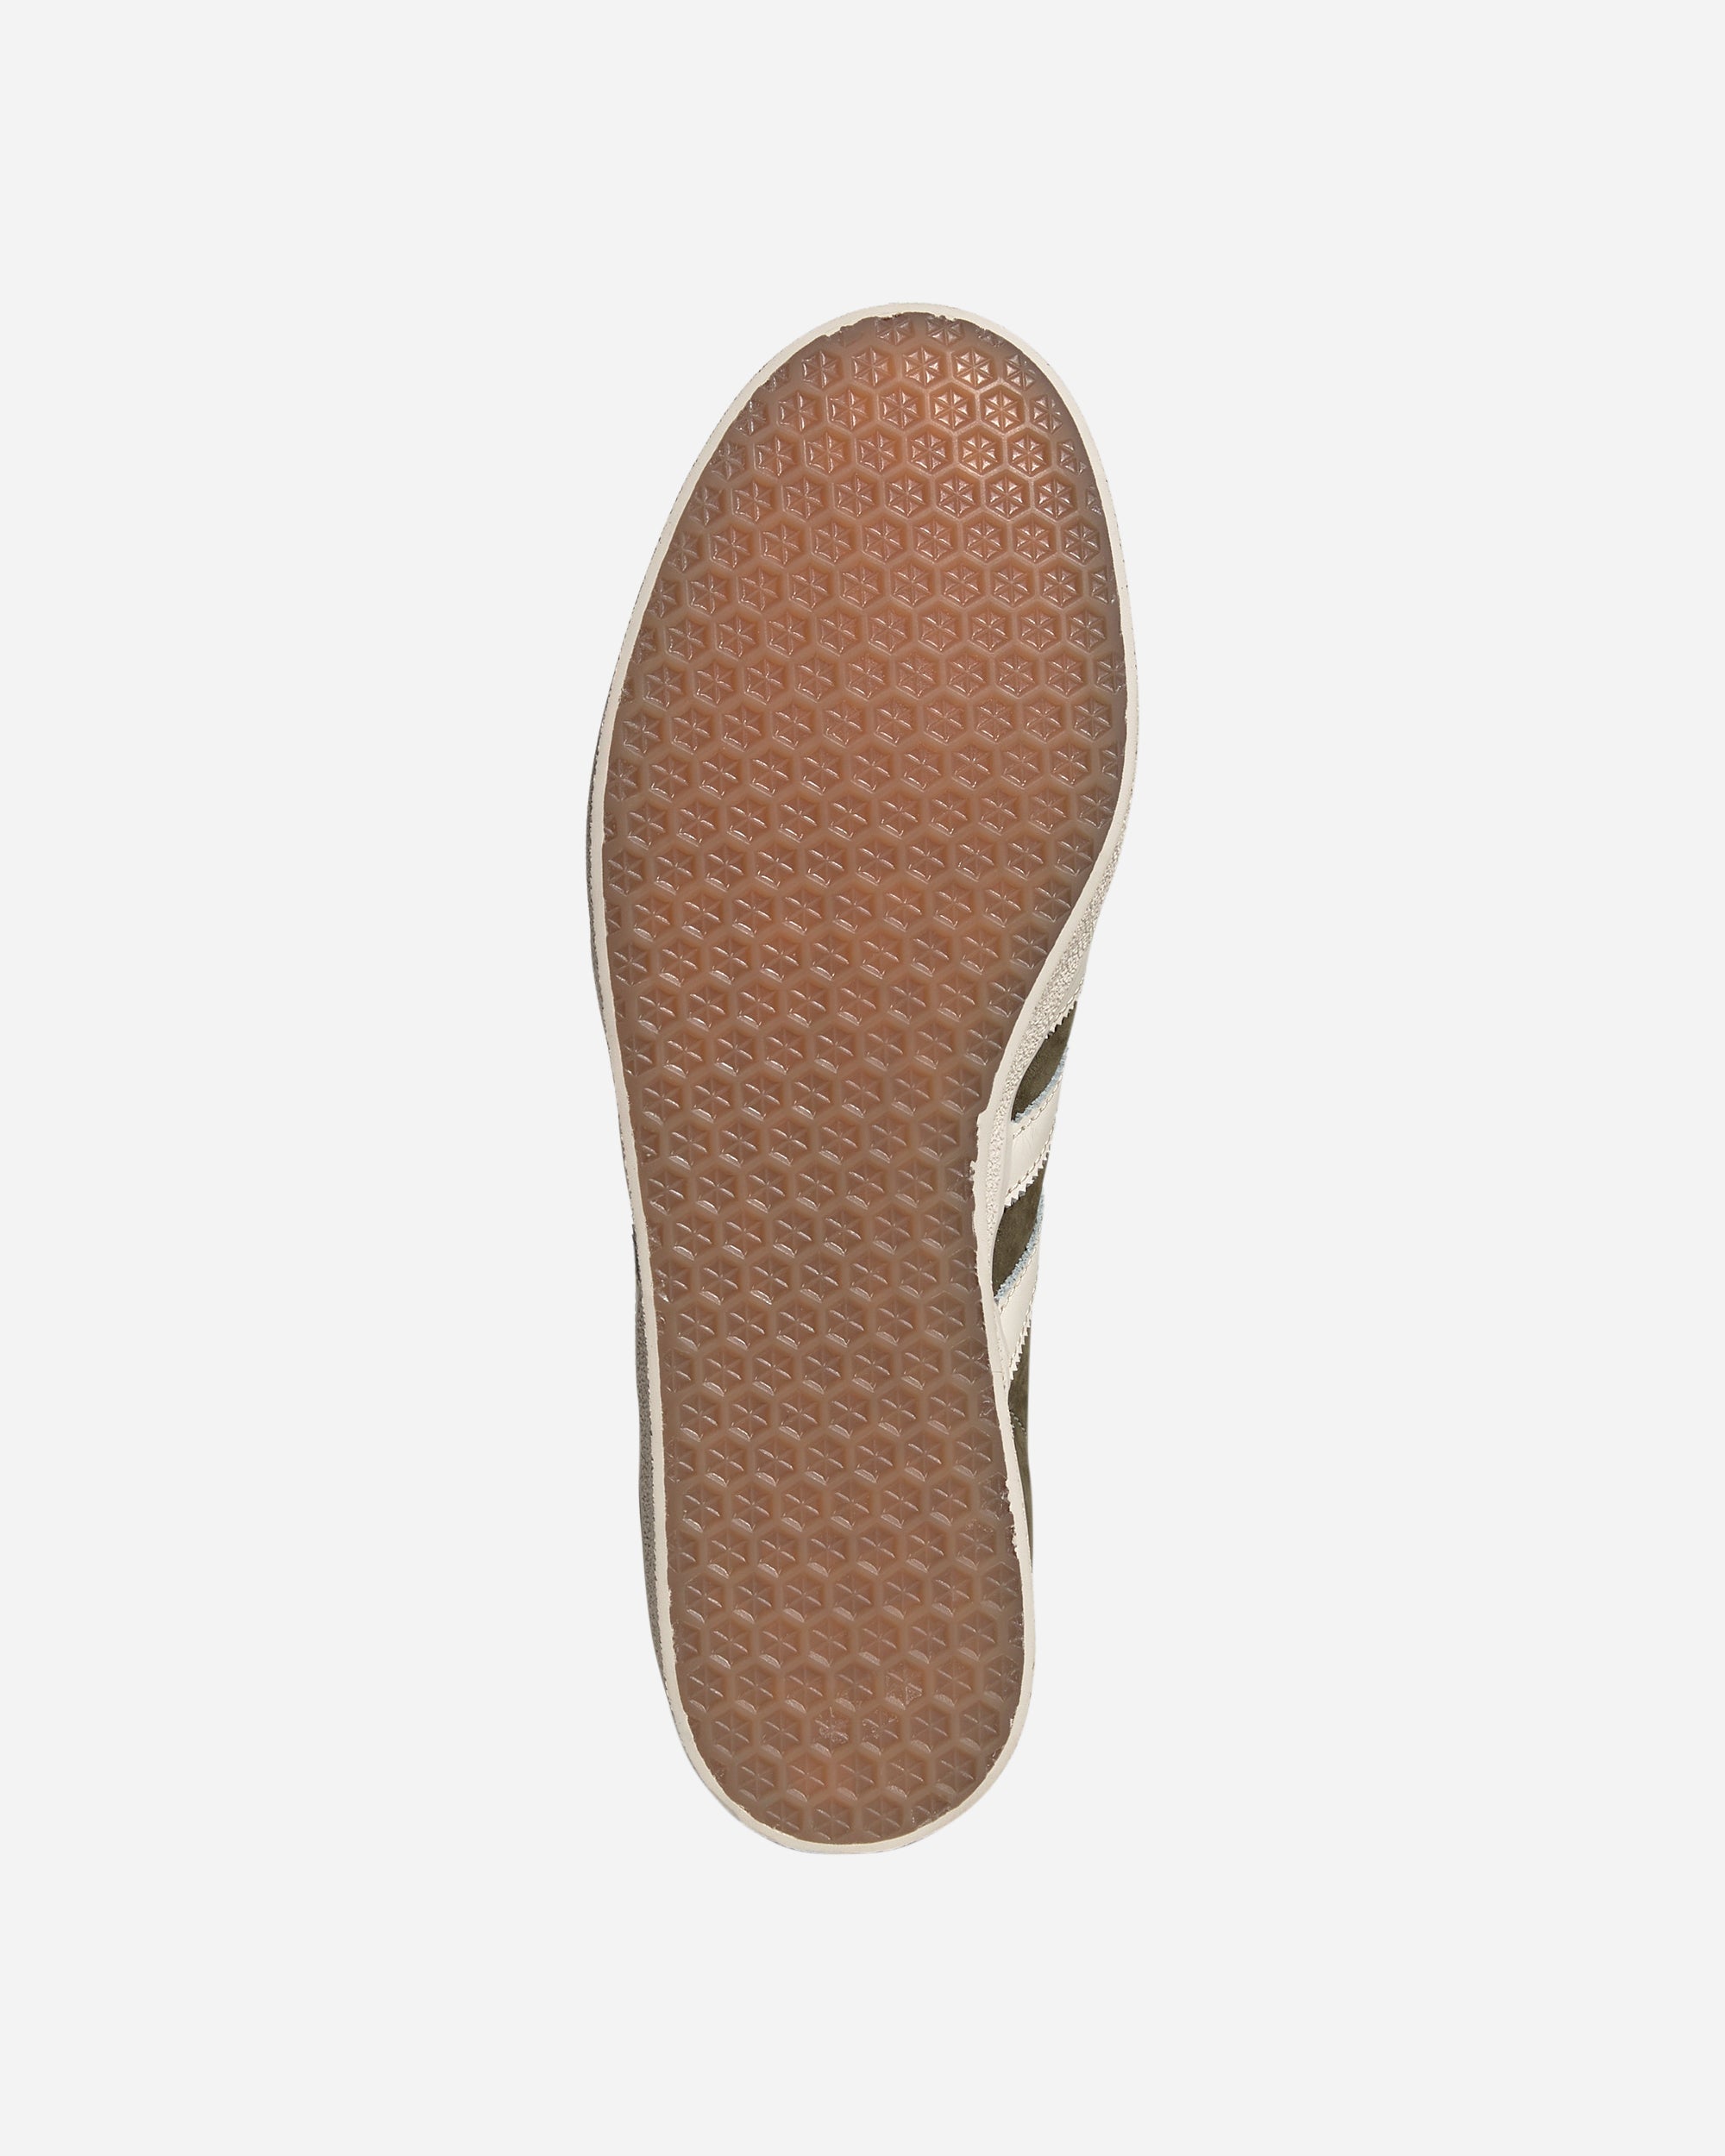 Adidas Ori Gazelle 85 OLISTR/CWHITE/WONWHI IG5006